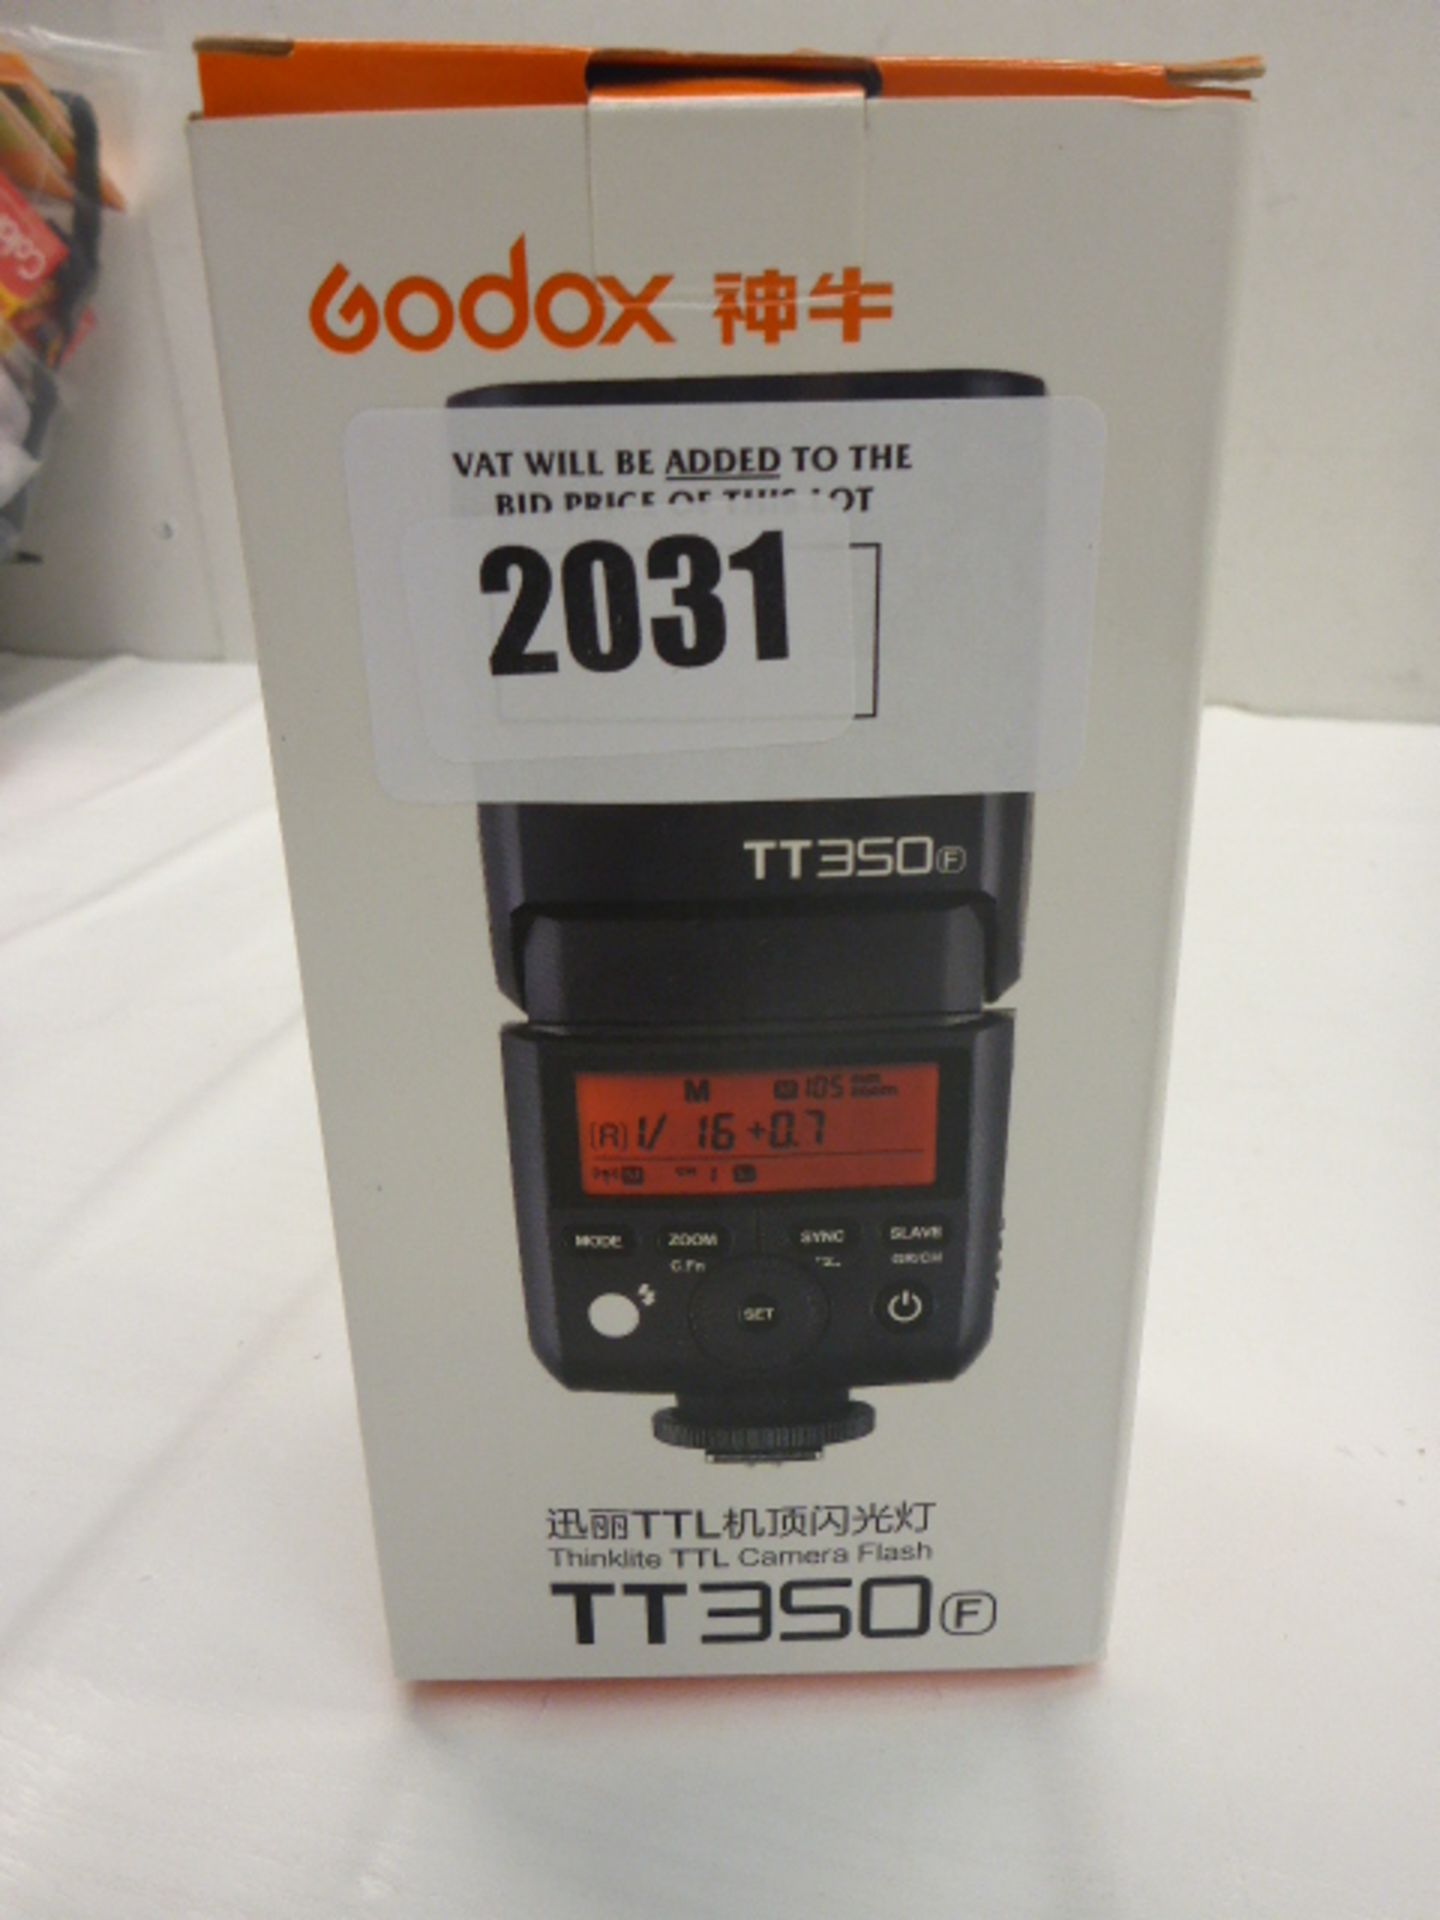 GoDox TT350F camera flash